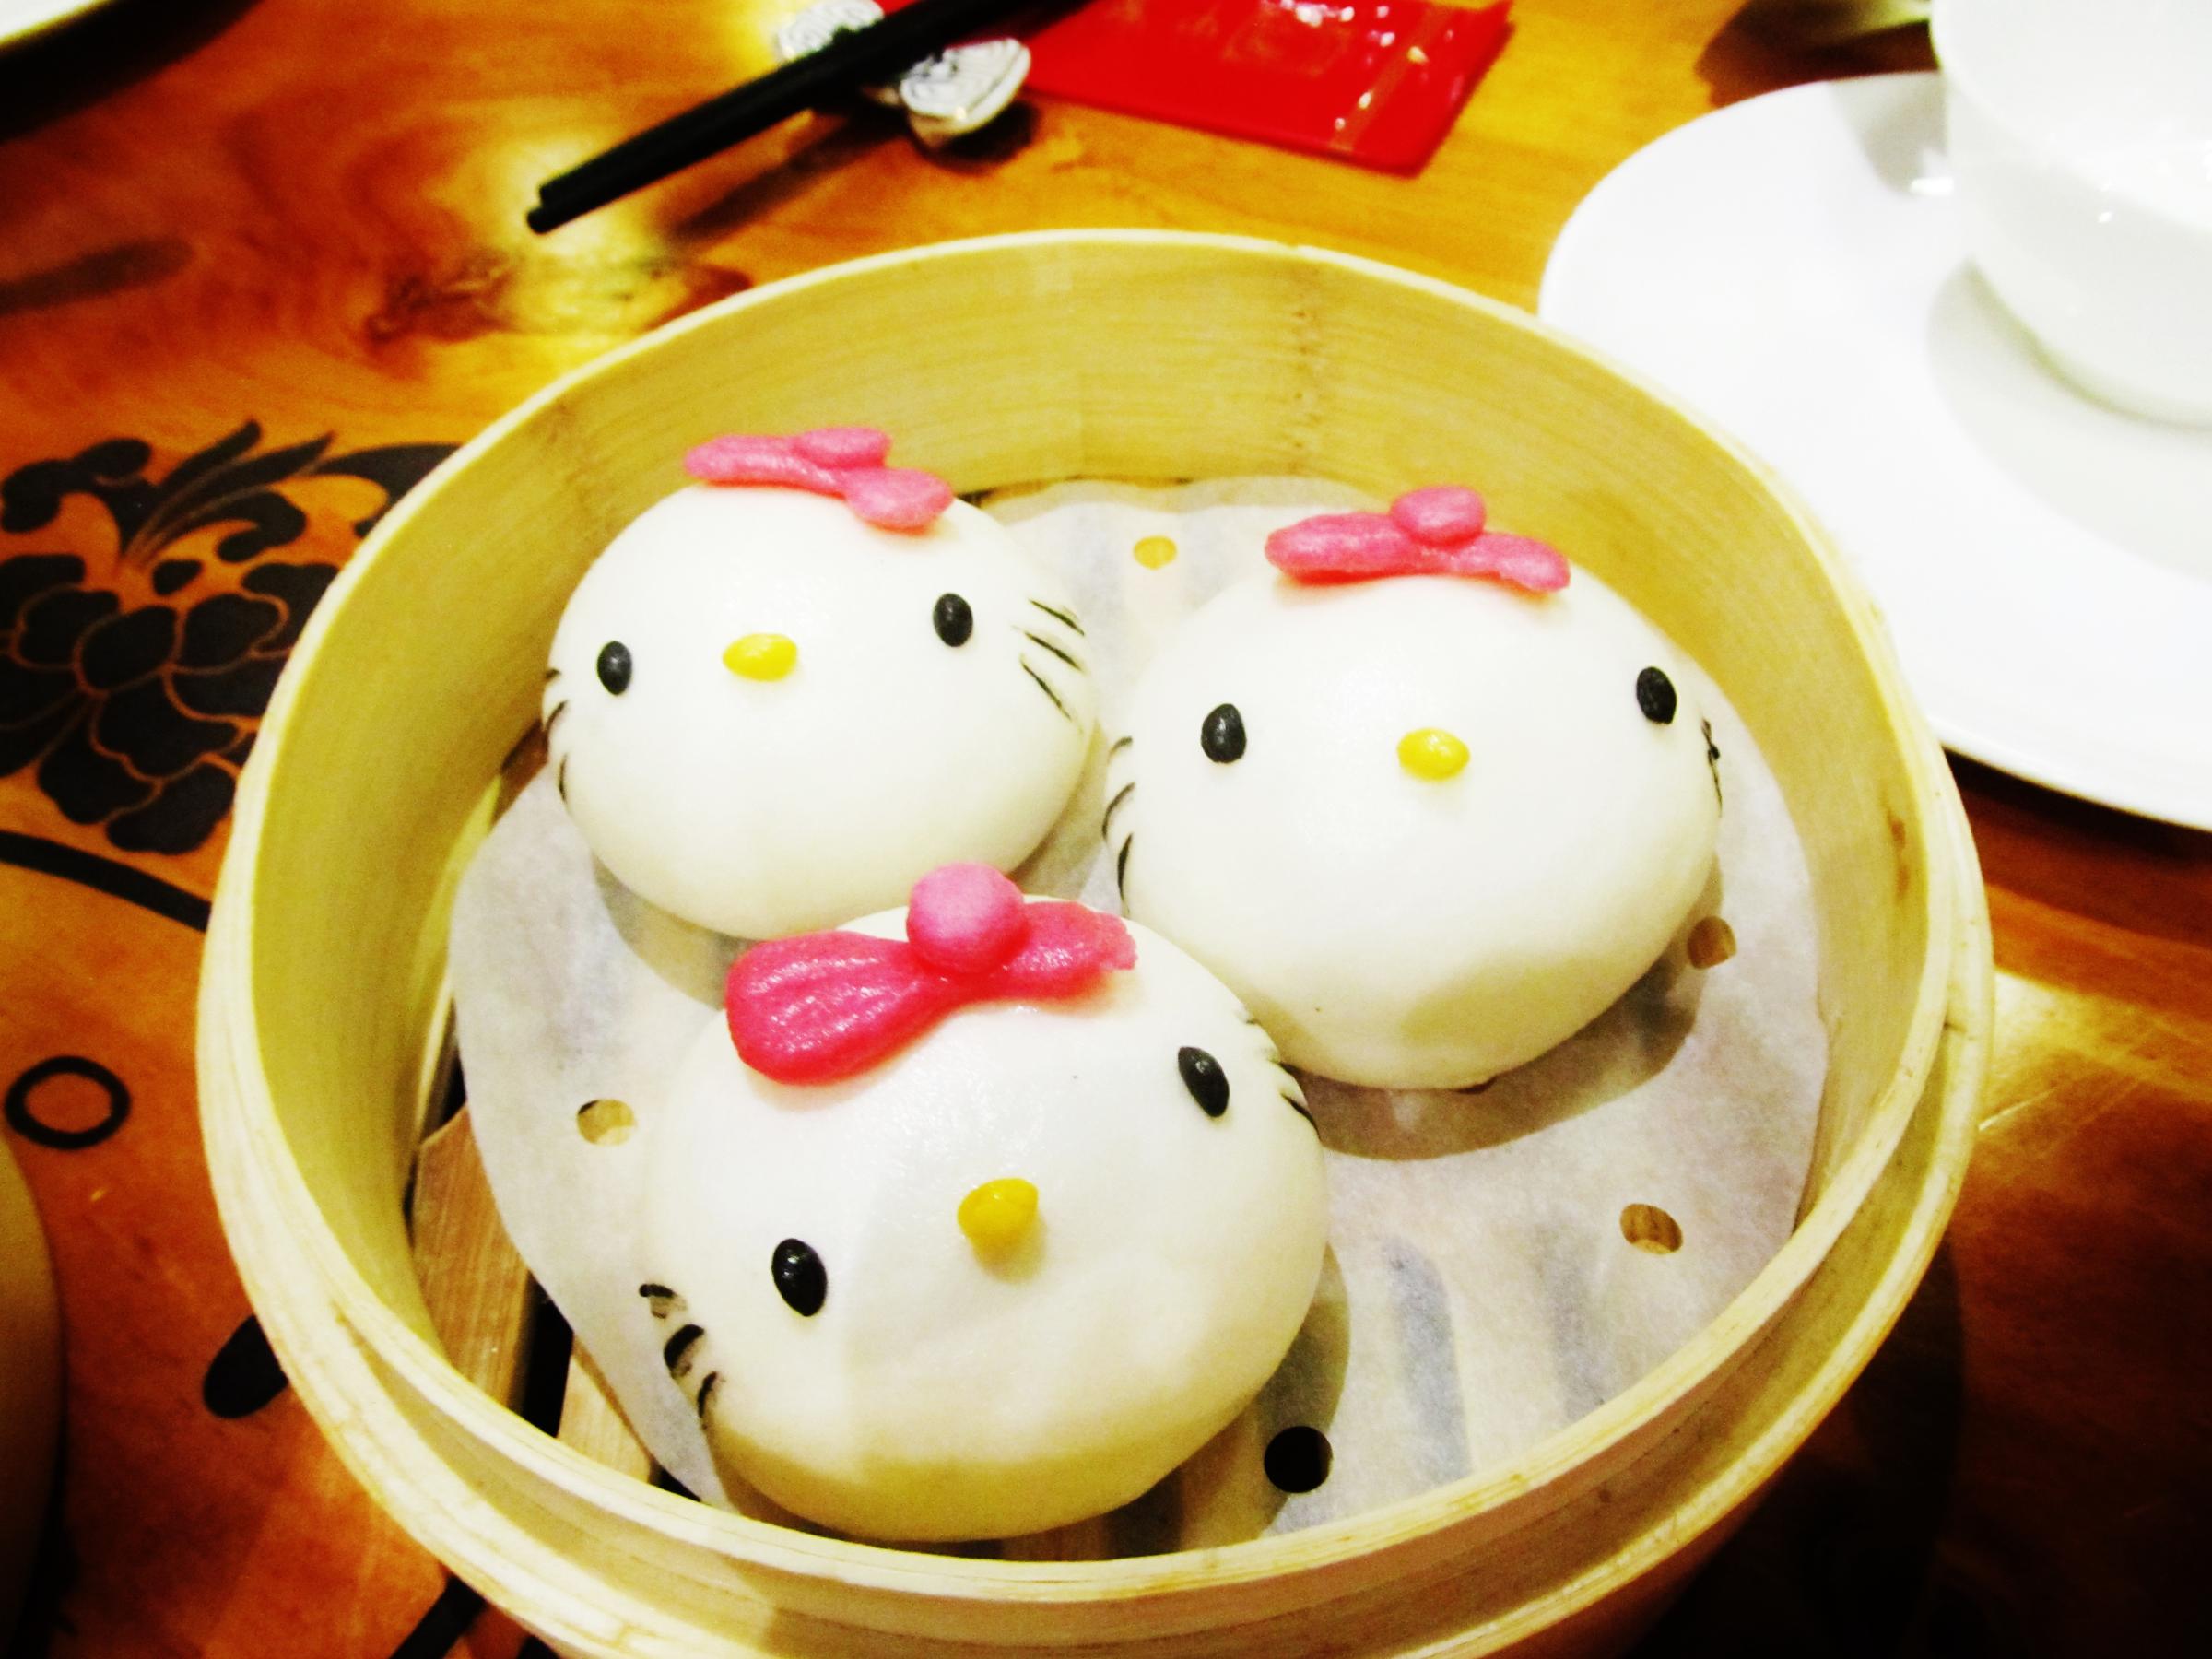 Hello Kitty Chinese Restaurant